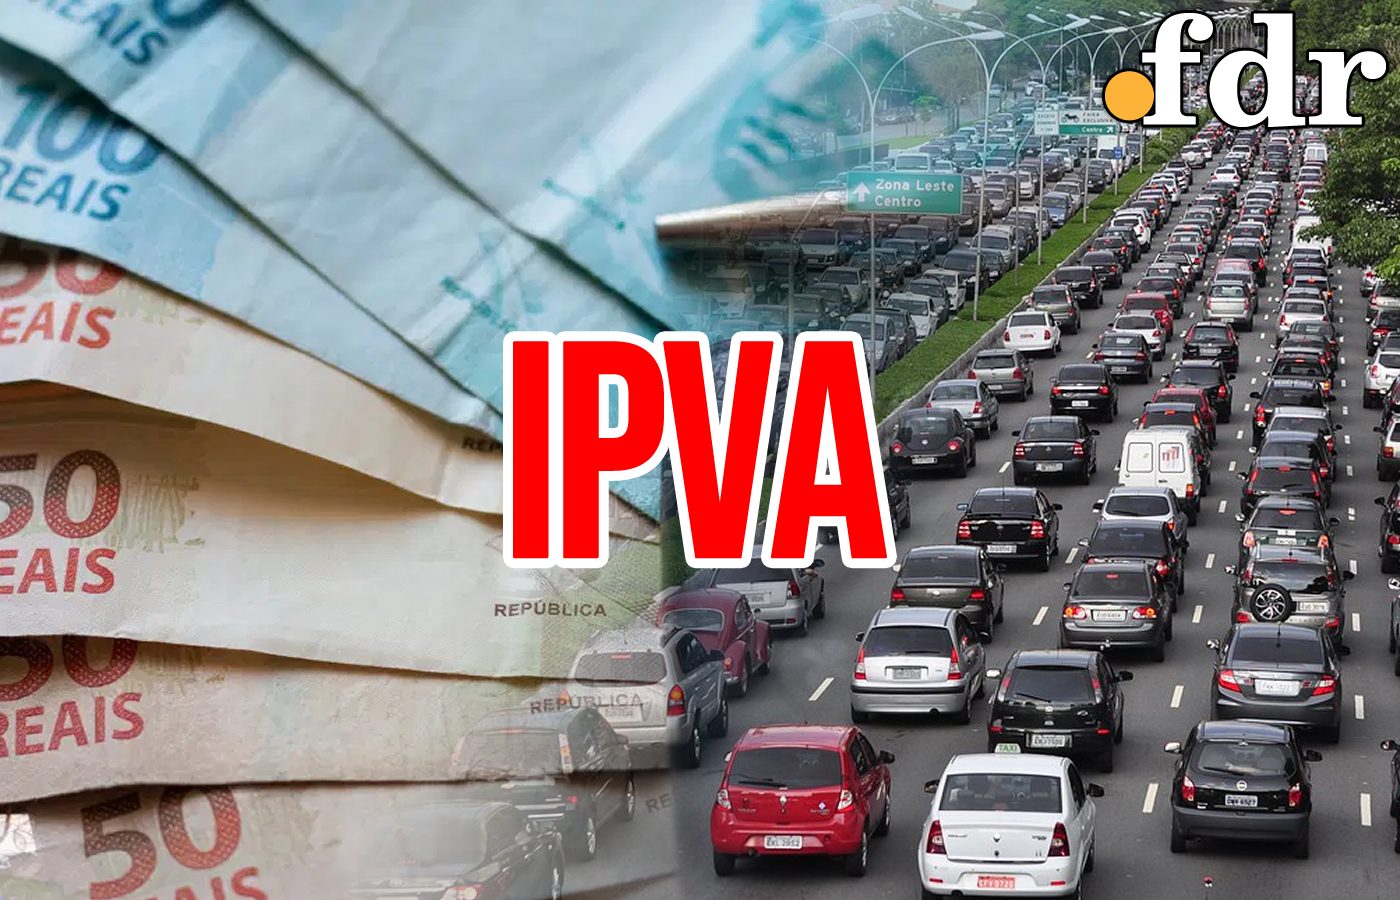 IPVA atrasado: confira os 5 carros com as maiores dívidas em SP